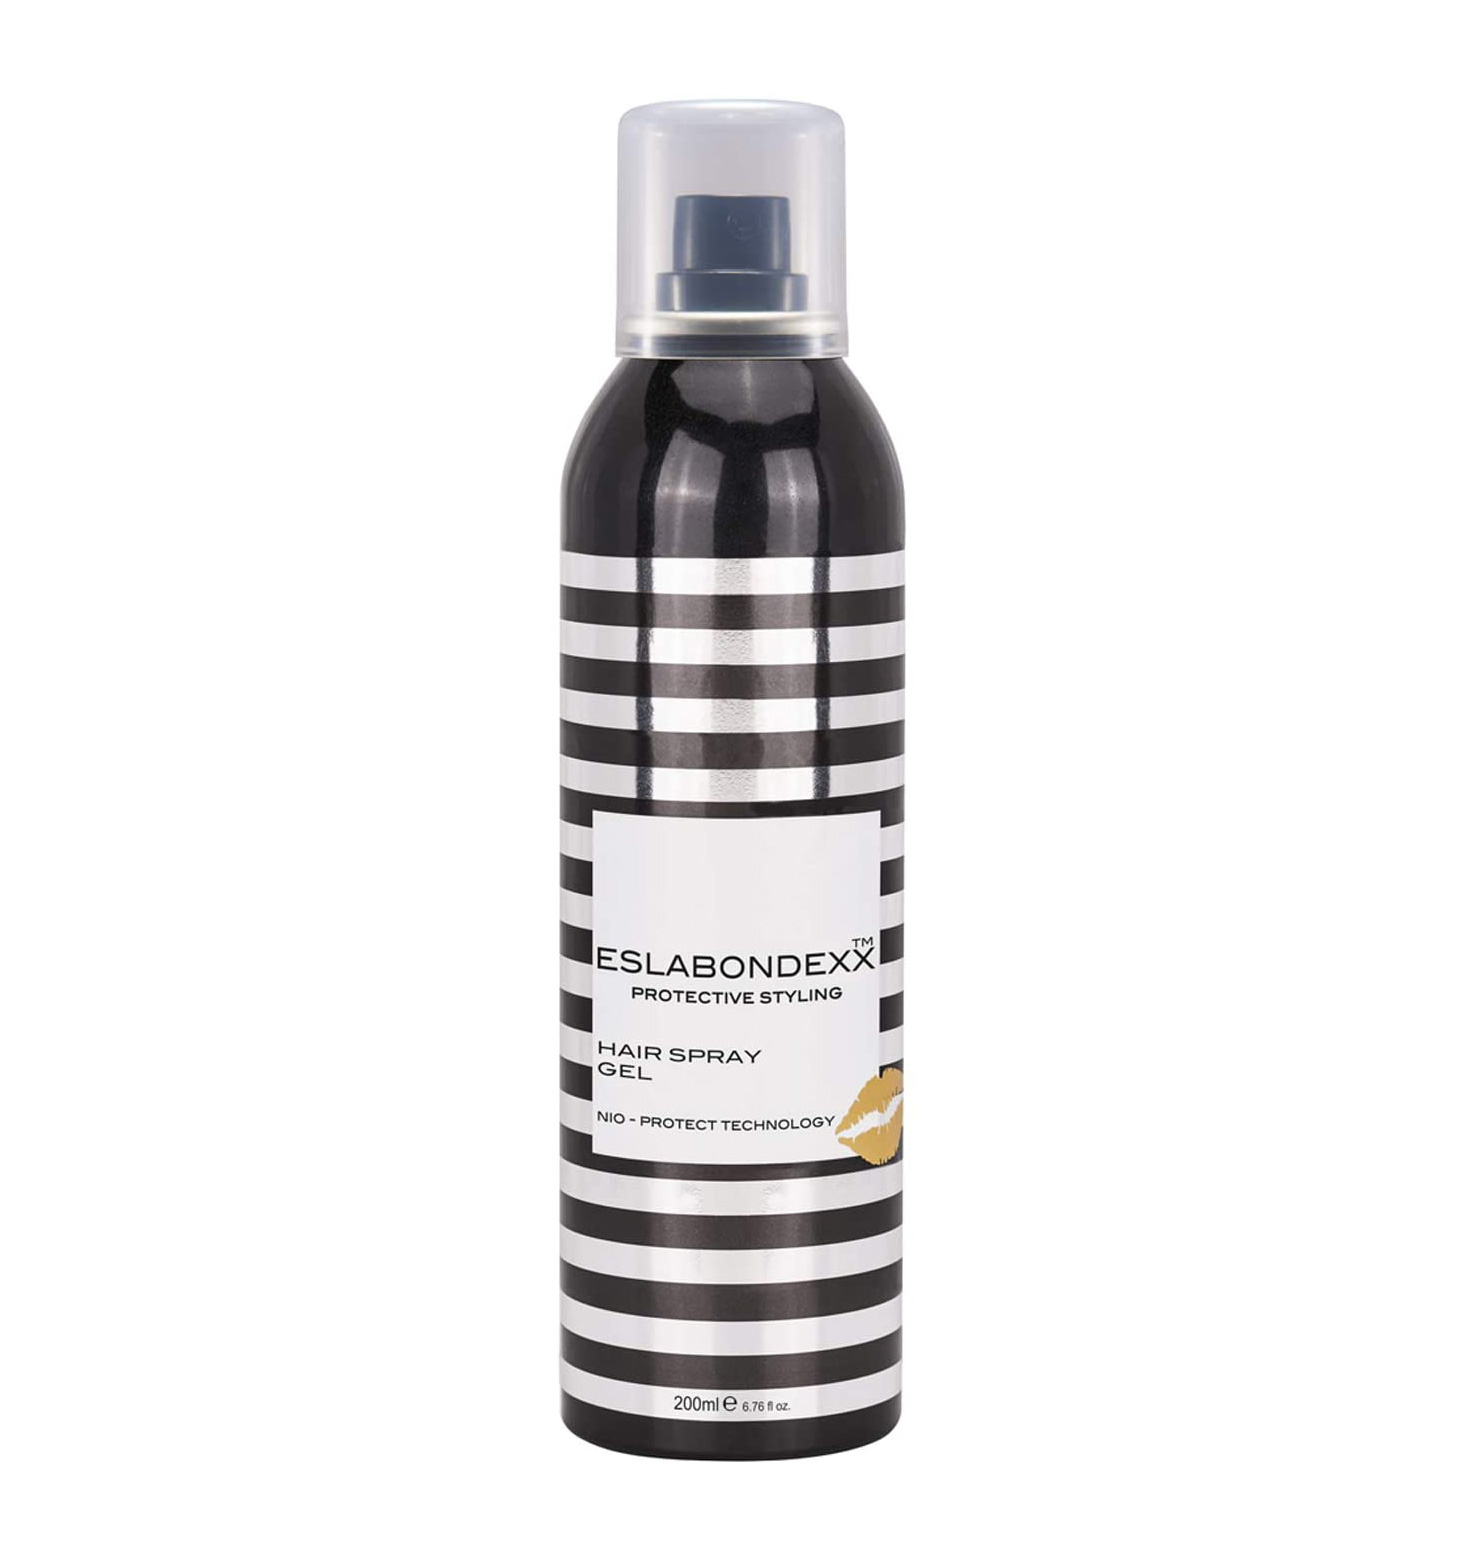 ESLABONDEXX™ Protective Styling Hair Spray Gel - ľahko fixačný gél v spreji, 200ml